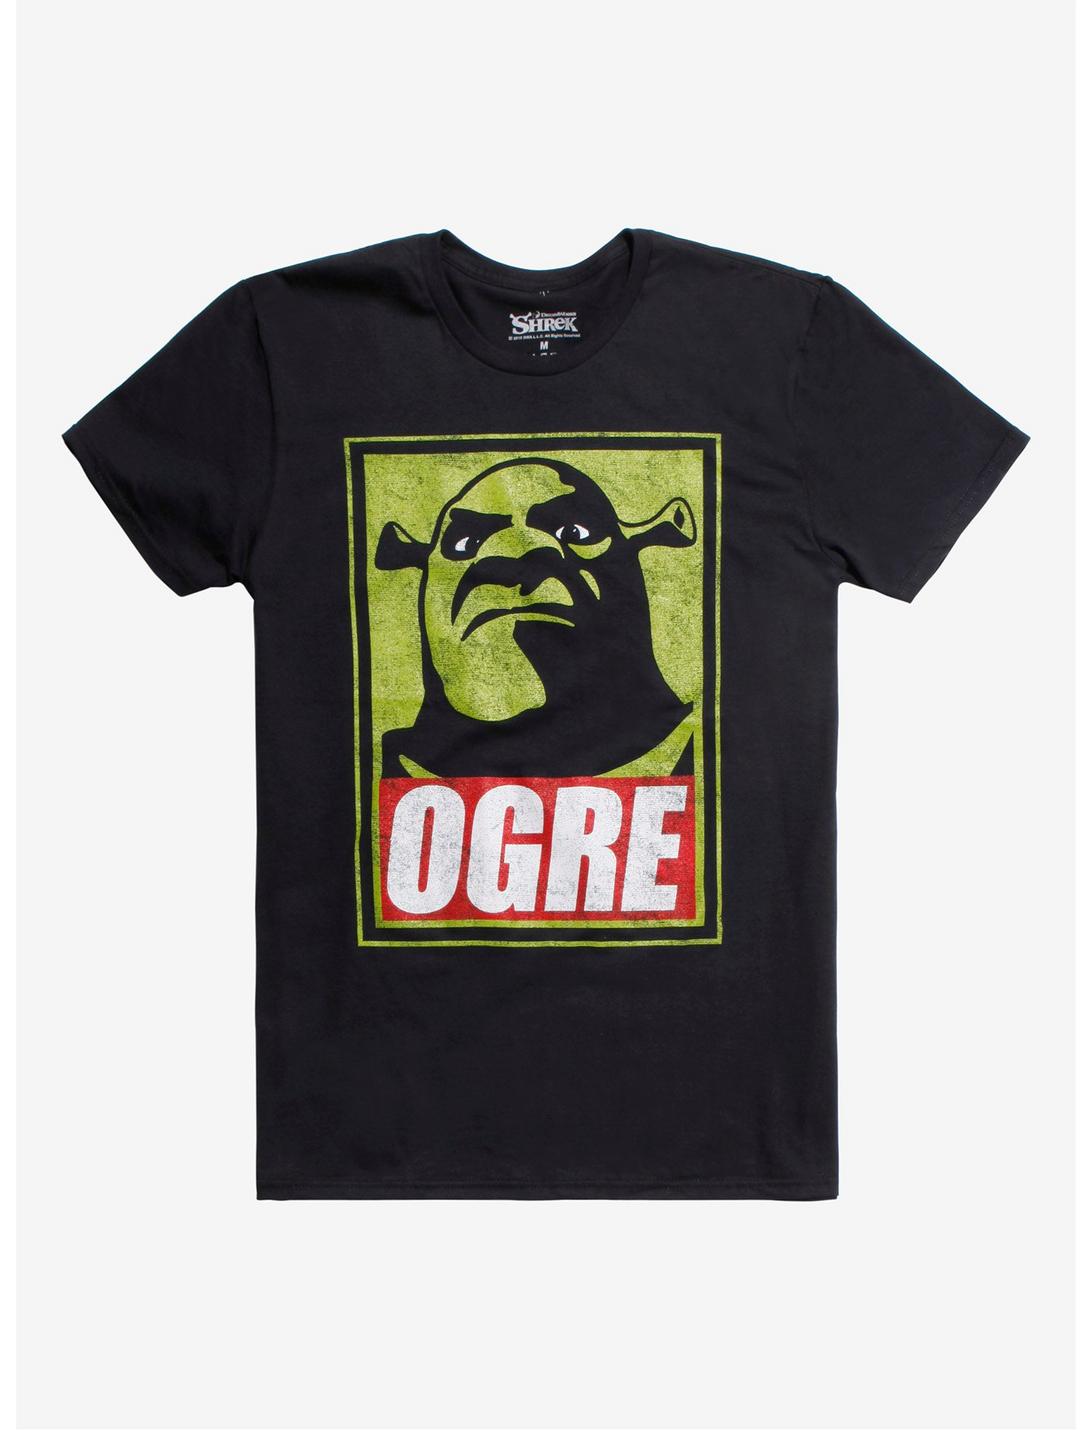 Shrek Ogre T-Shirt Hot Topic Exclusive, BLACK, hi-res